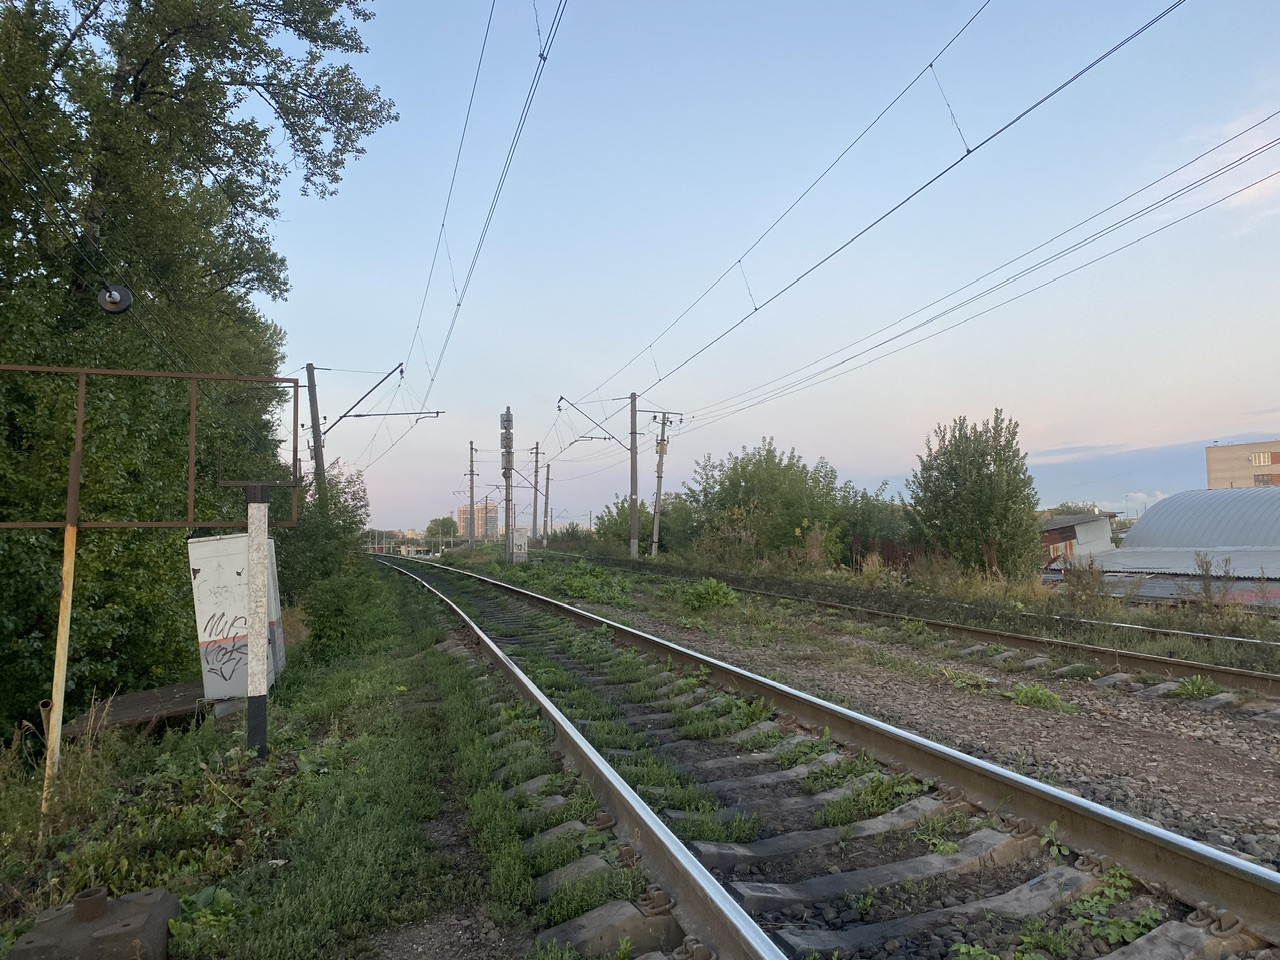 October Railway — Lines